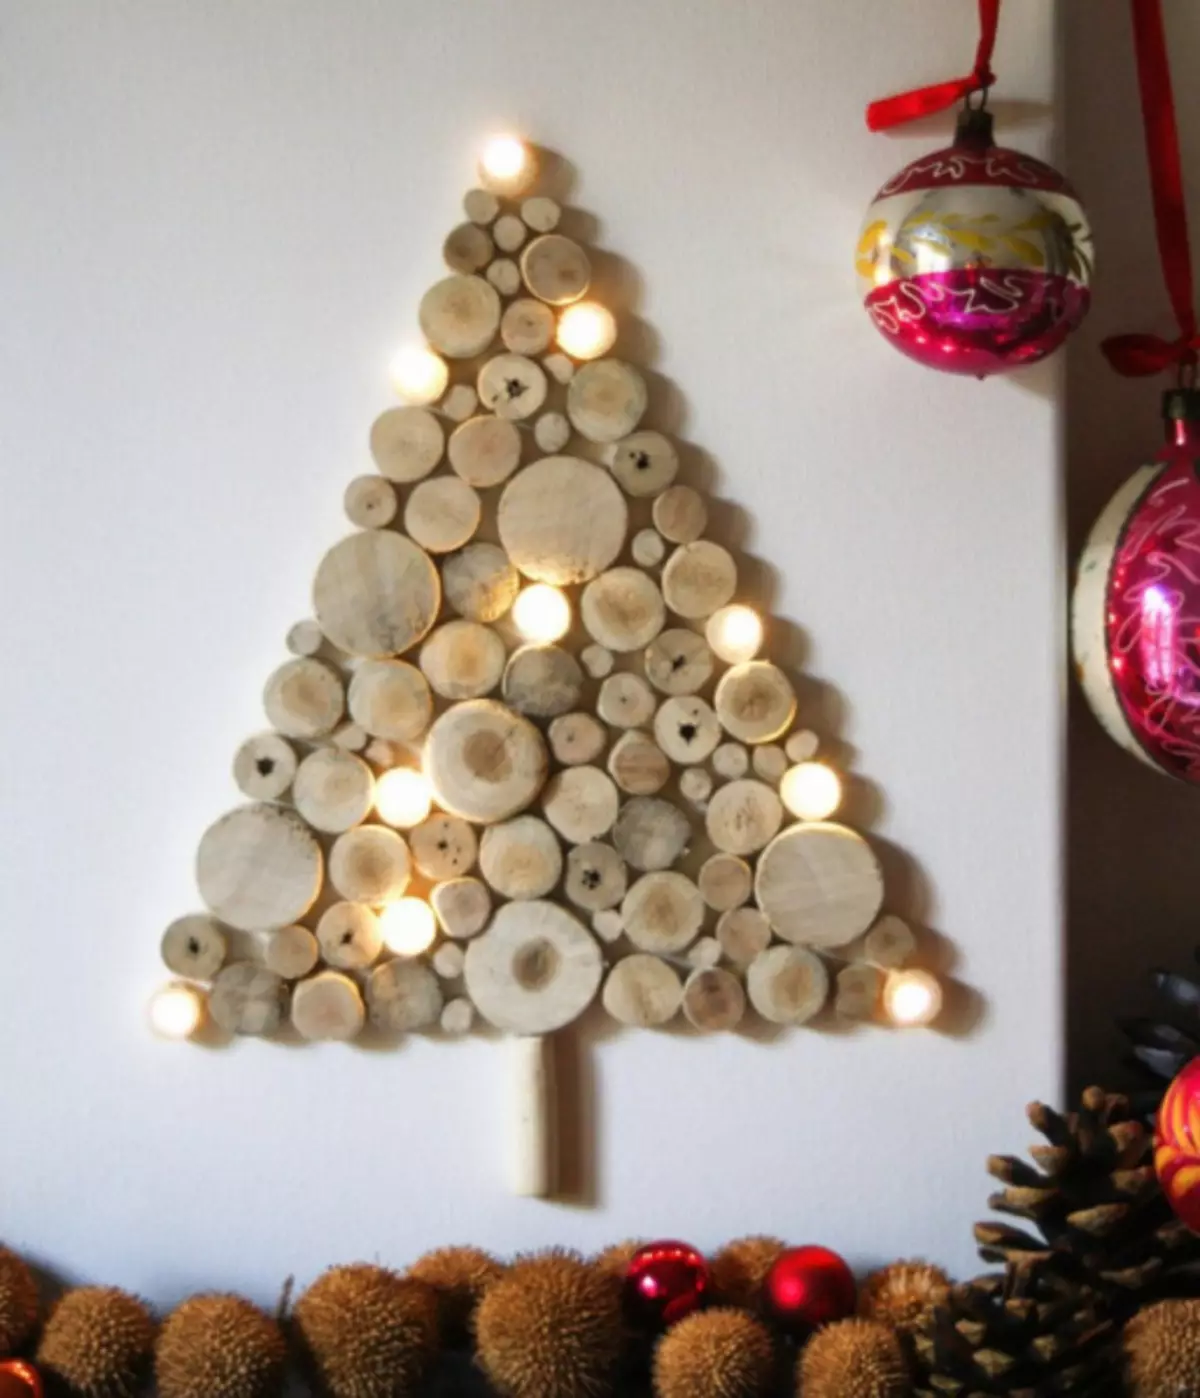 شجرة عيد الميلاد البديلة بأيديك: الفصول الرئيسية مع الصور ومقاطع الفيديو